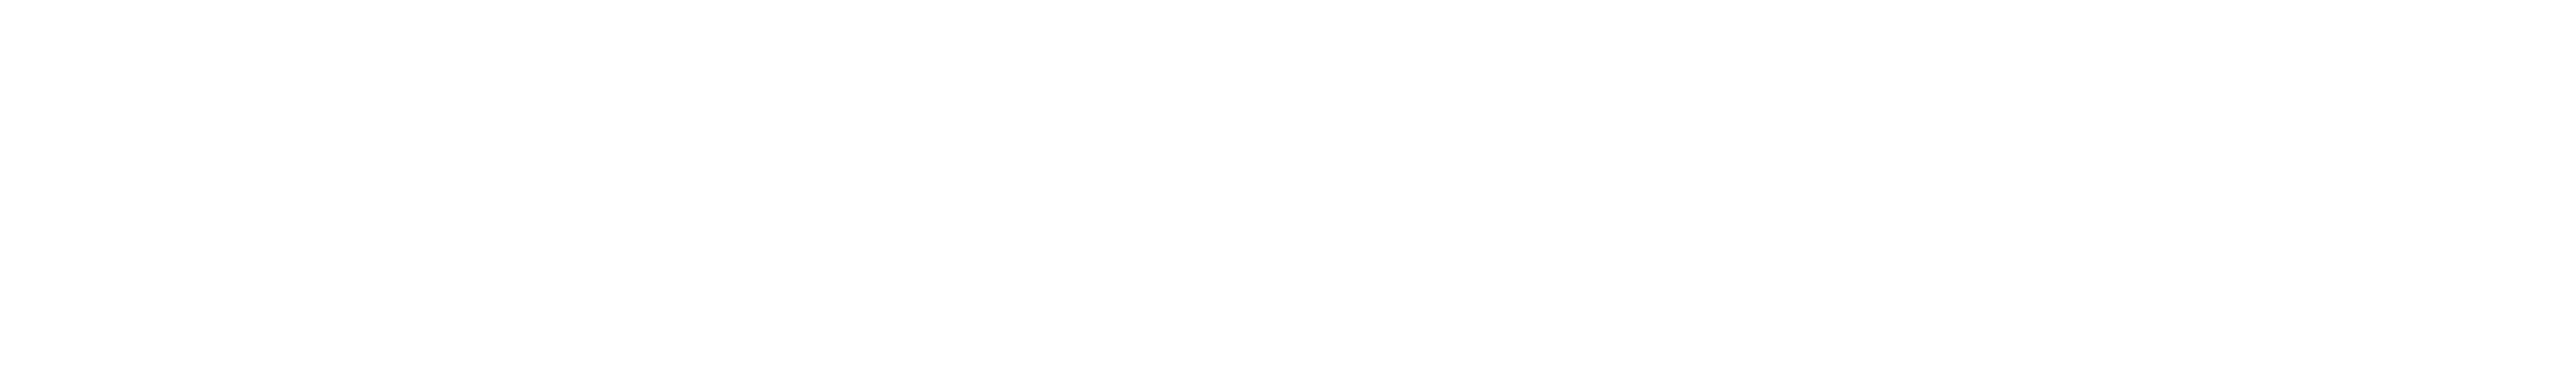 Plaza 50 logo